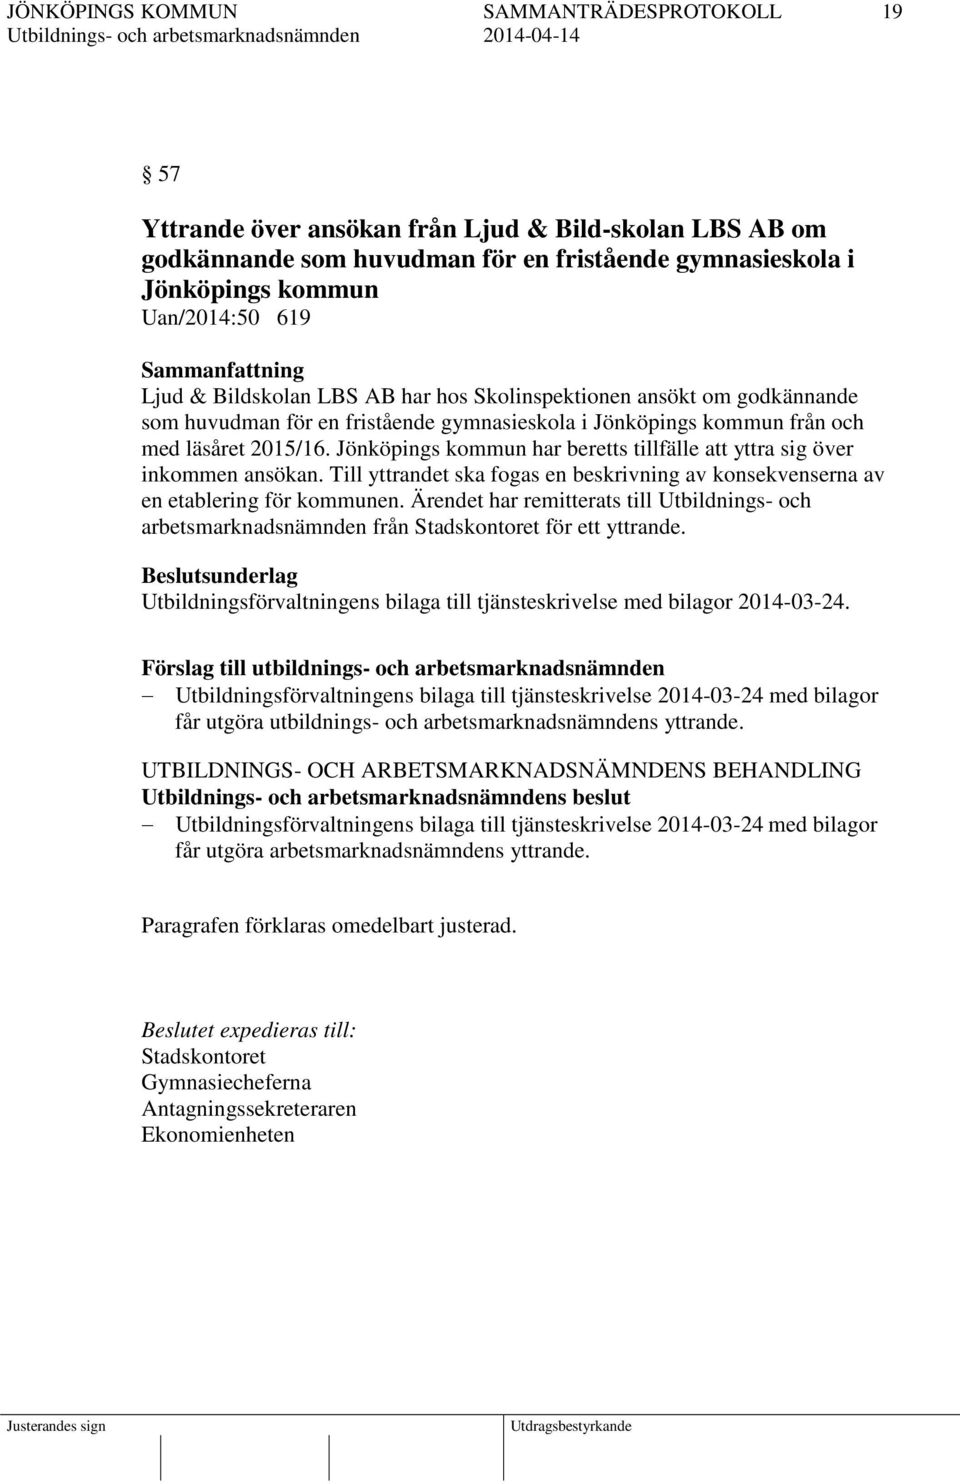 Jönköpings kommun har beretts tillfälle att yttra sig över inkommen ansökan. Till yttrandet ska fogas en beskrivning av konsekvenserna av en etablering för kommunen.